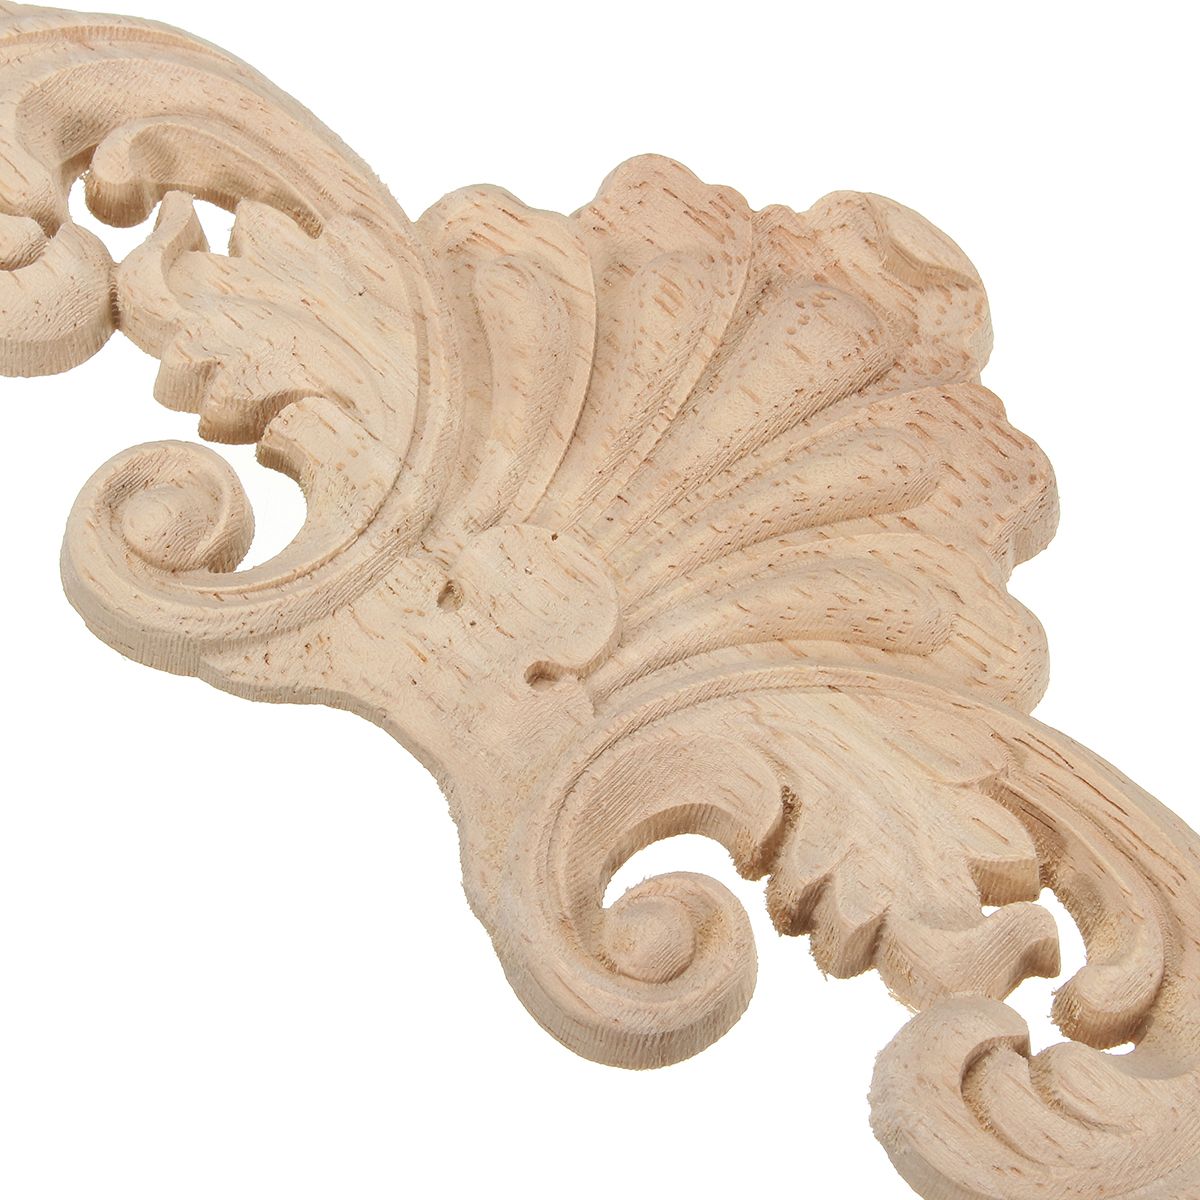 Wood-Carving-Applique-Unpainted-Flower-Applique-Wood-Carving-Decal-30x8cm-20x5cm-1162689